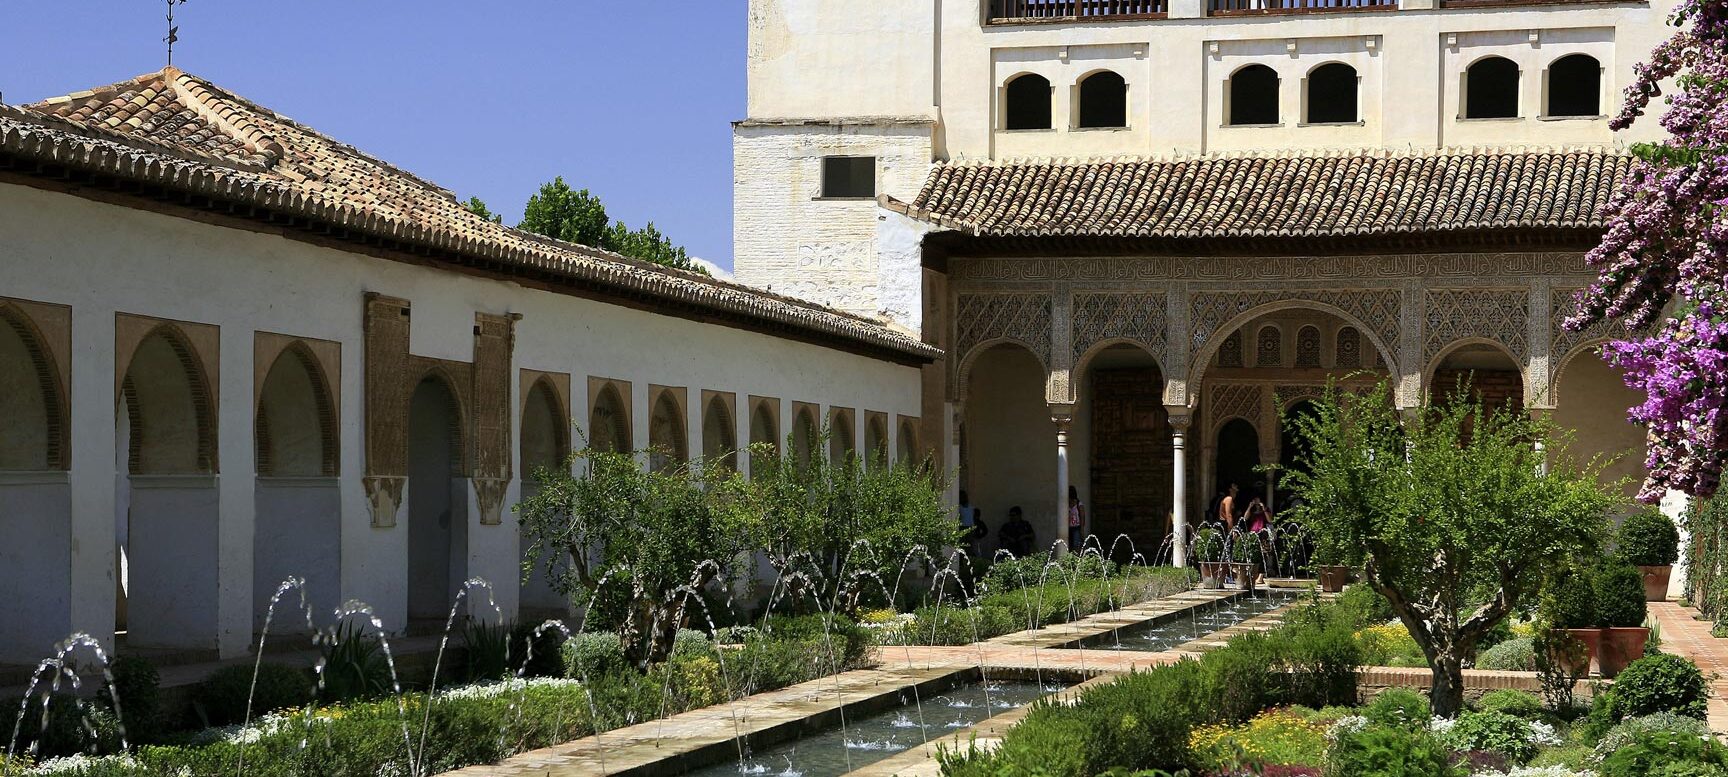 CASA MUSEO MANUEL DE FALLA		Granada	Granada